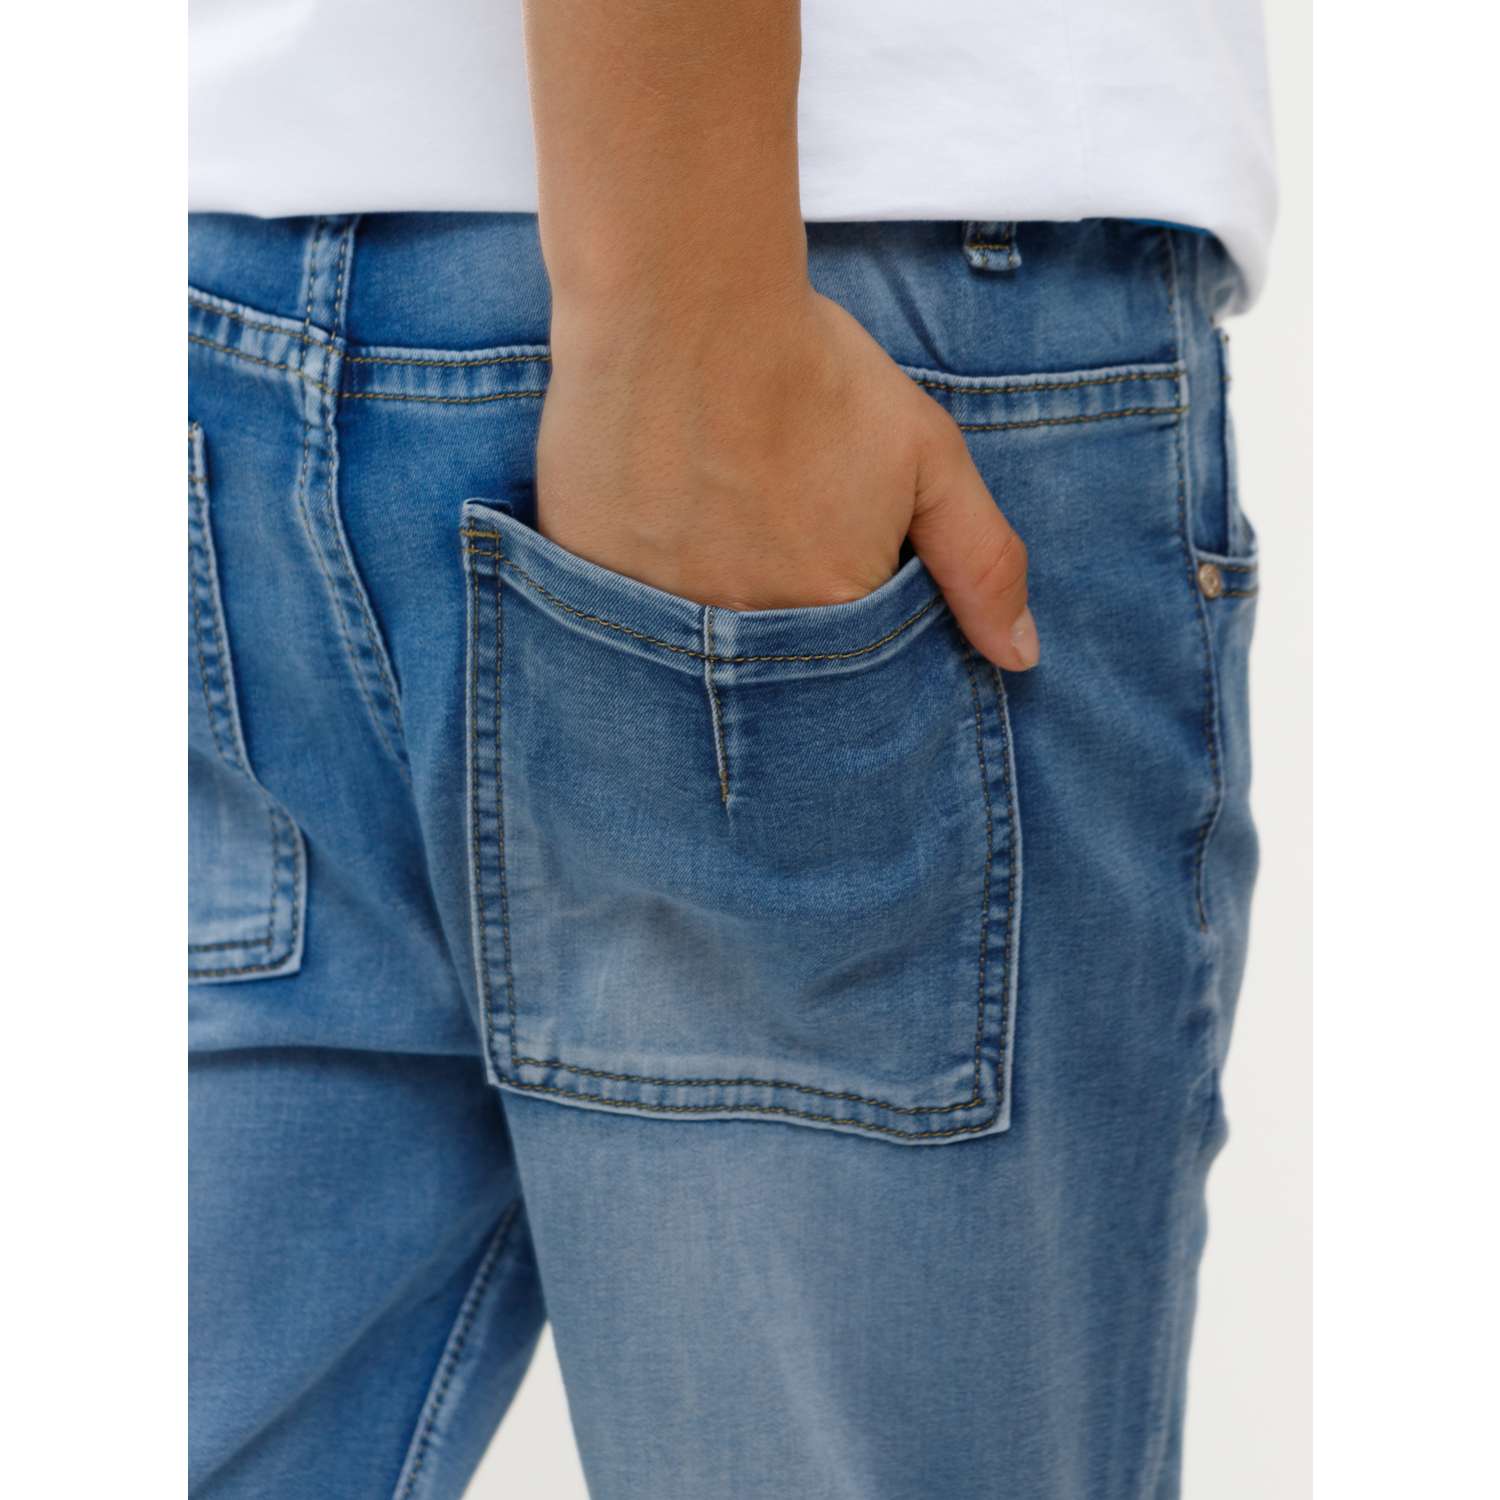 Шорты джинсовые Veresk AX1060-B63 - фото 7